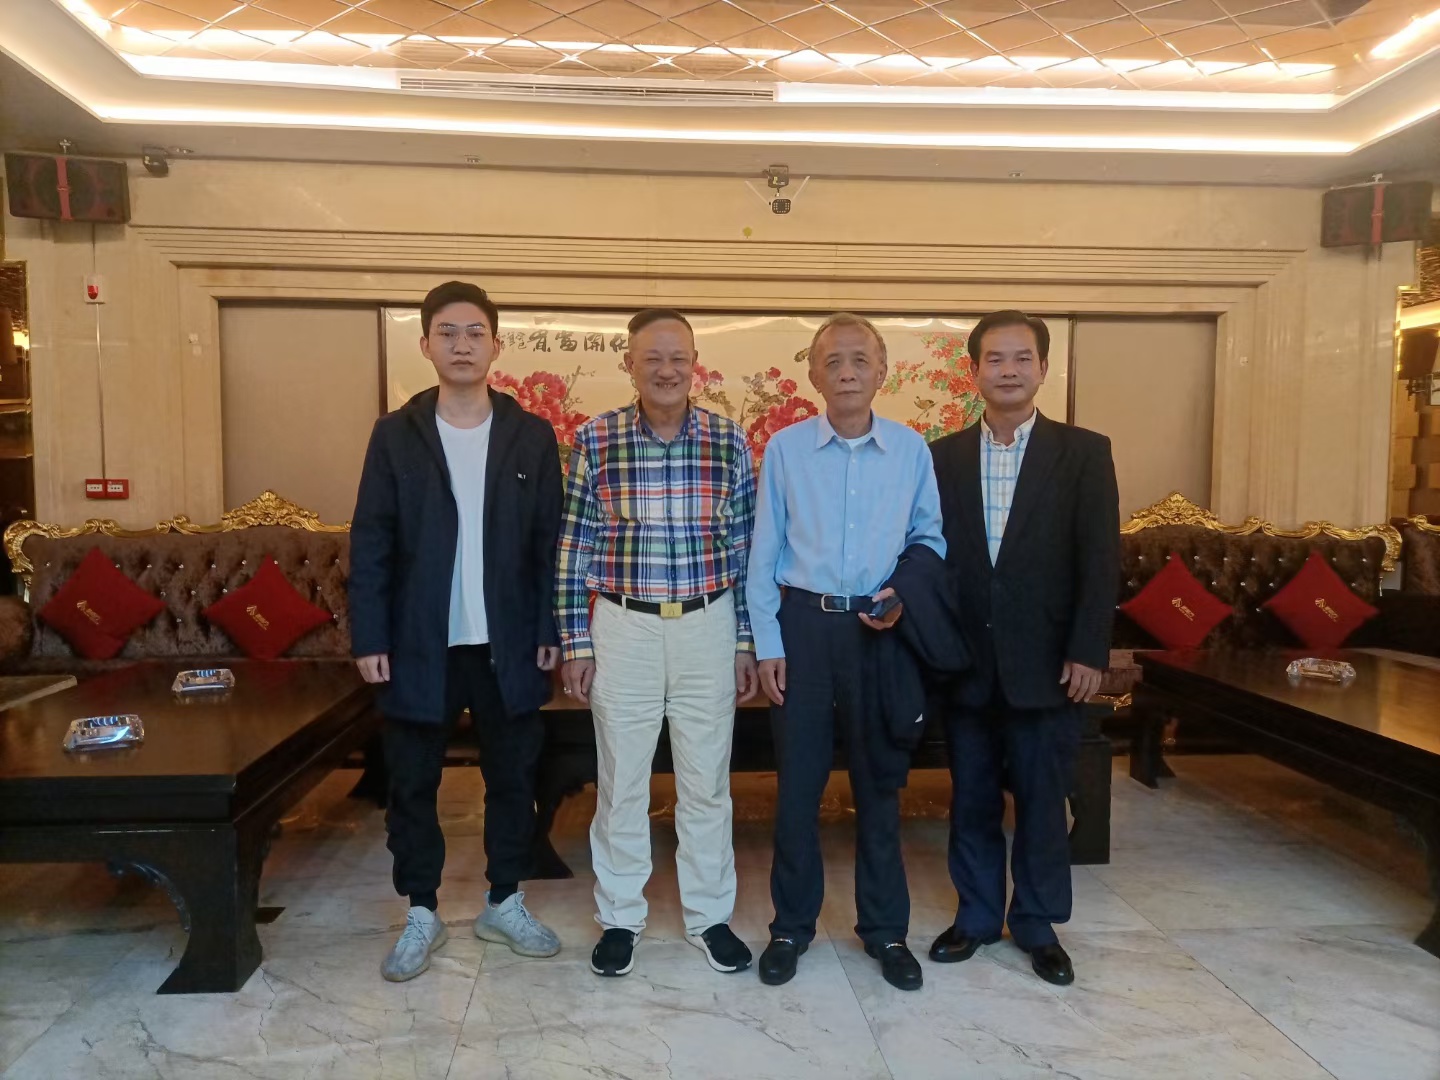 4月20日、暖阳微风、莺飞草长、和“以大众健康为已任、不懈努力”的广东新南方集团有限公司董事长朱拉伊先生在一起。